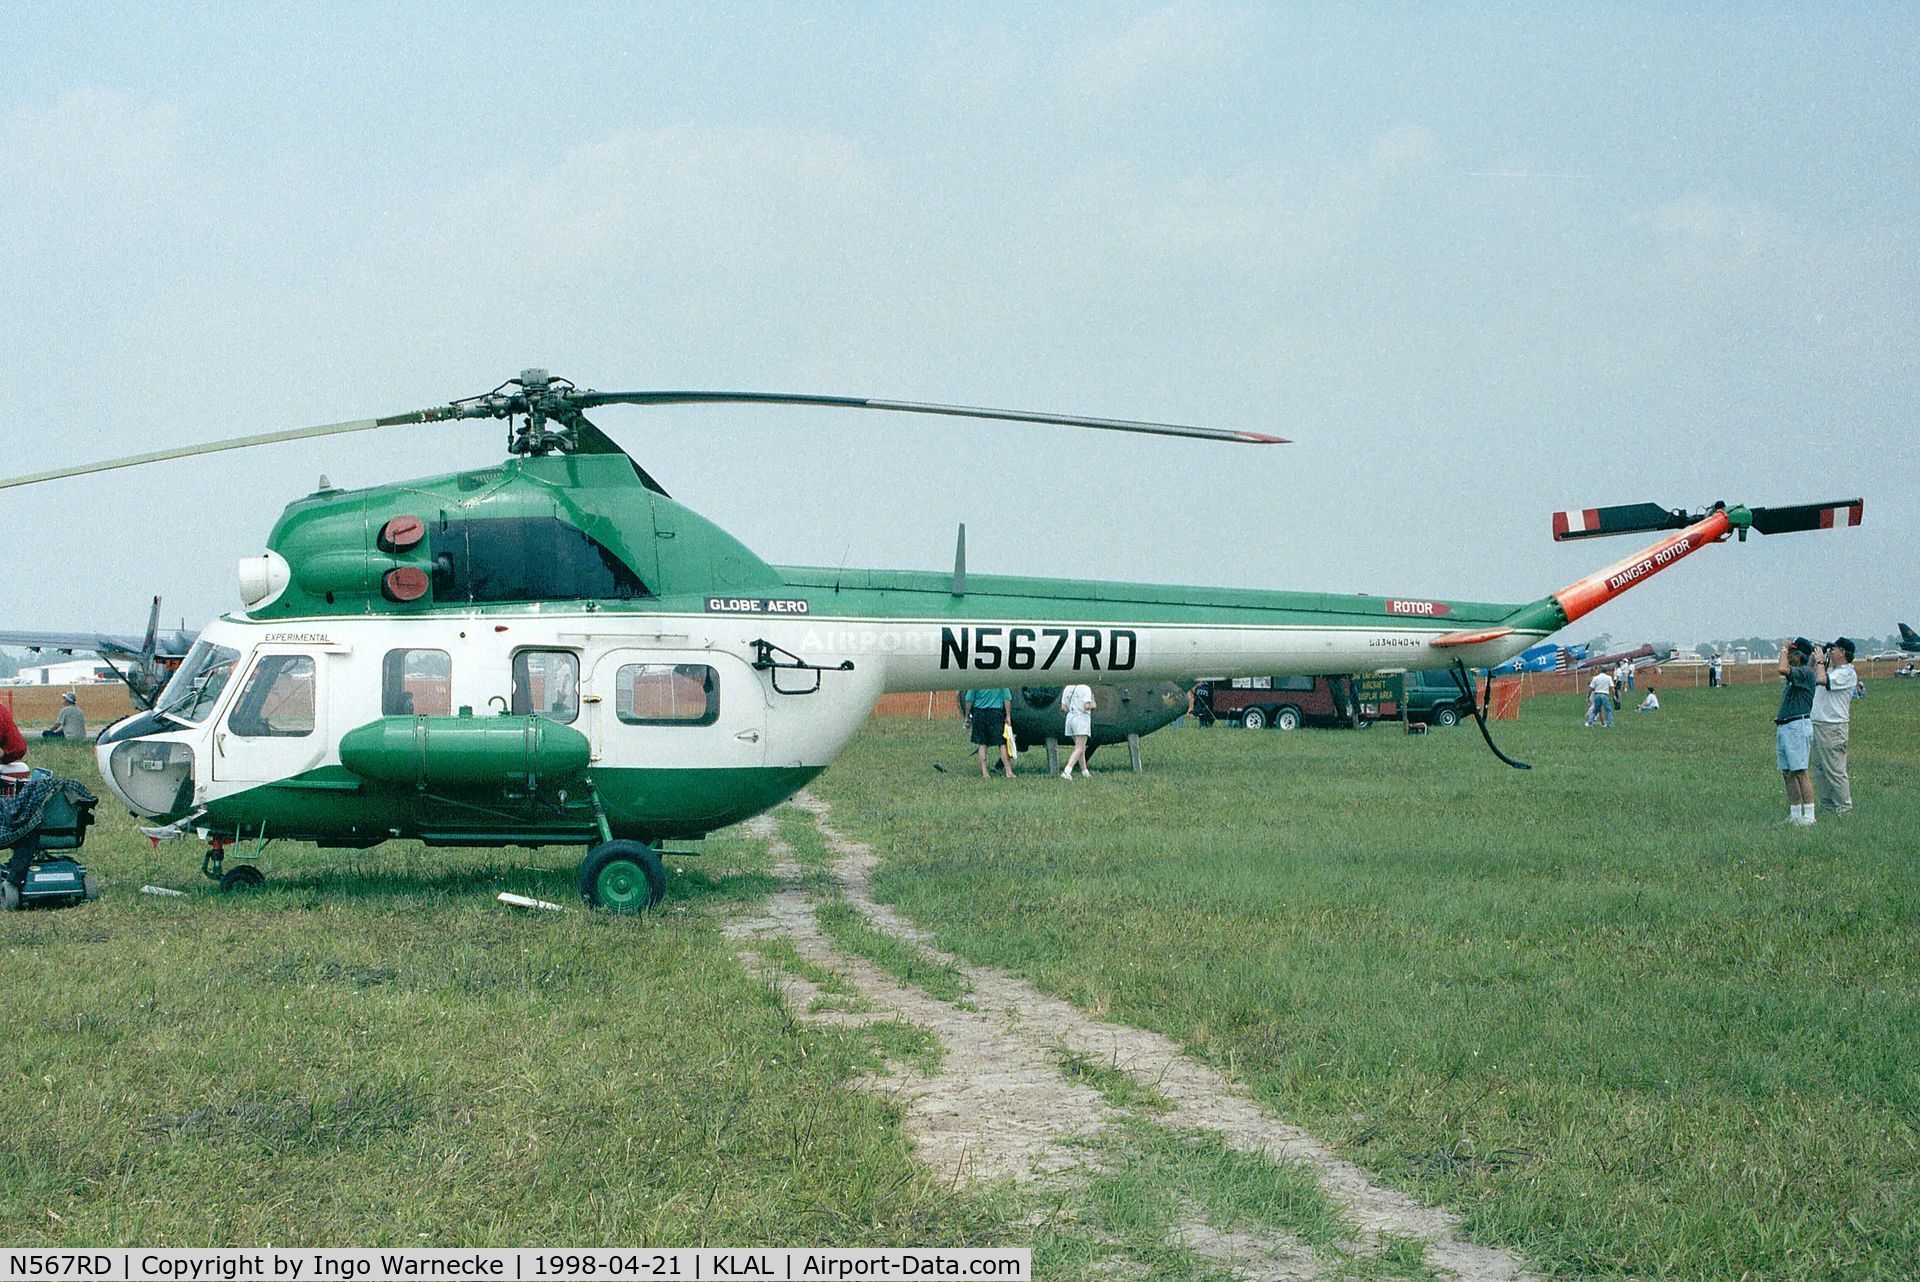 N567RD, Mil (PZL-Swidnik) Mi-2 C/N 563404044, Mil (PZL-Swidnik) Mi-2 HOPLITE (probably ex German police) at 1998 Sun 'n Fun, Lakeland FL